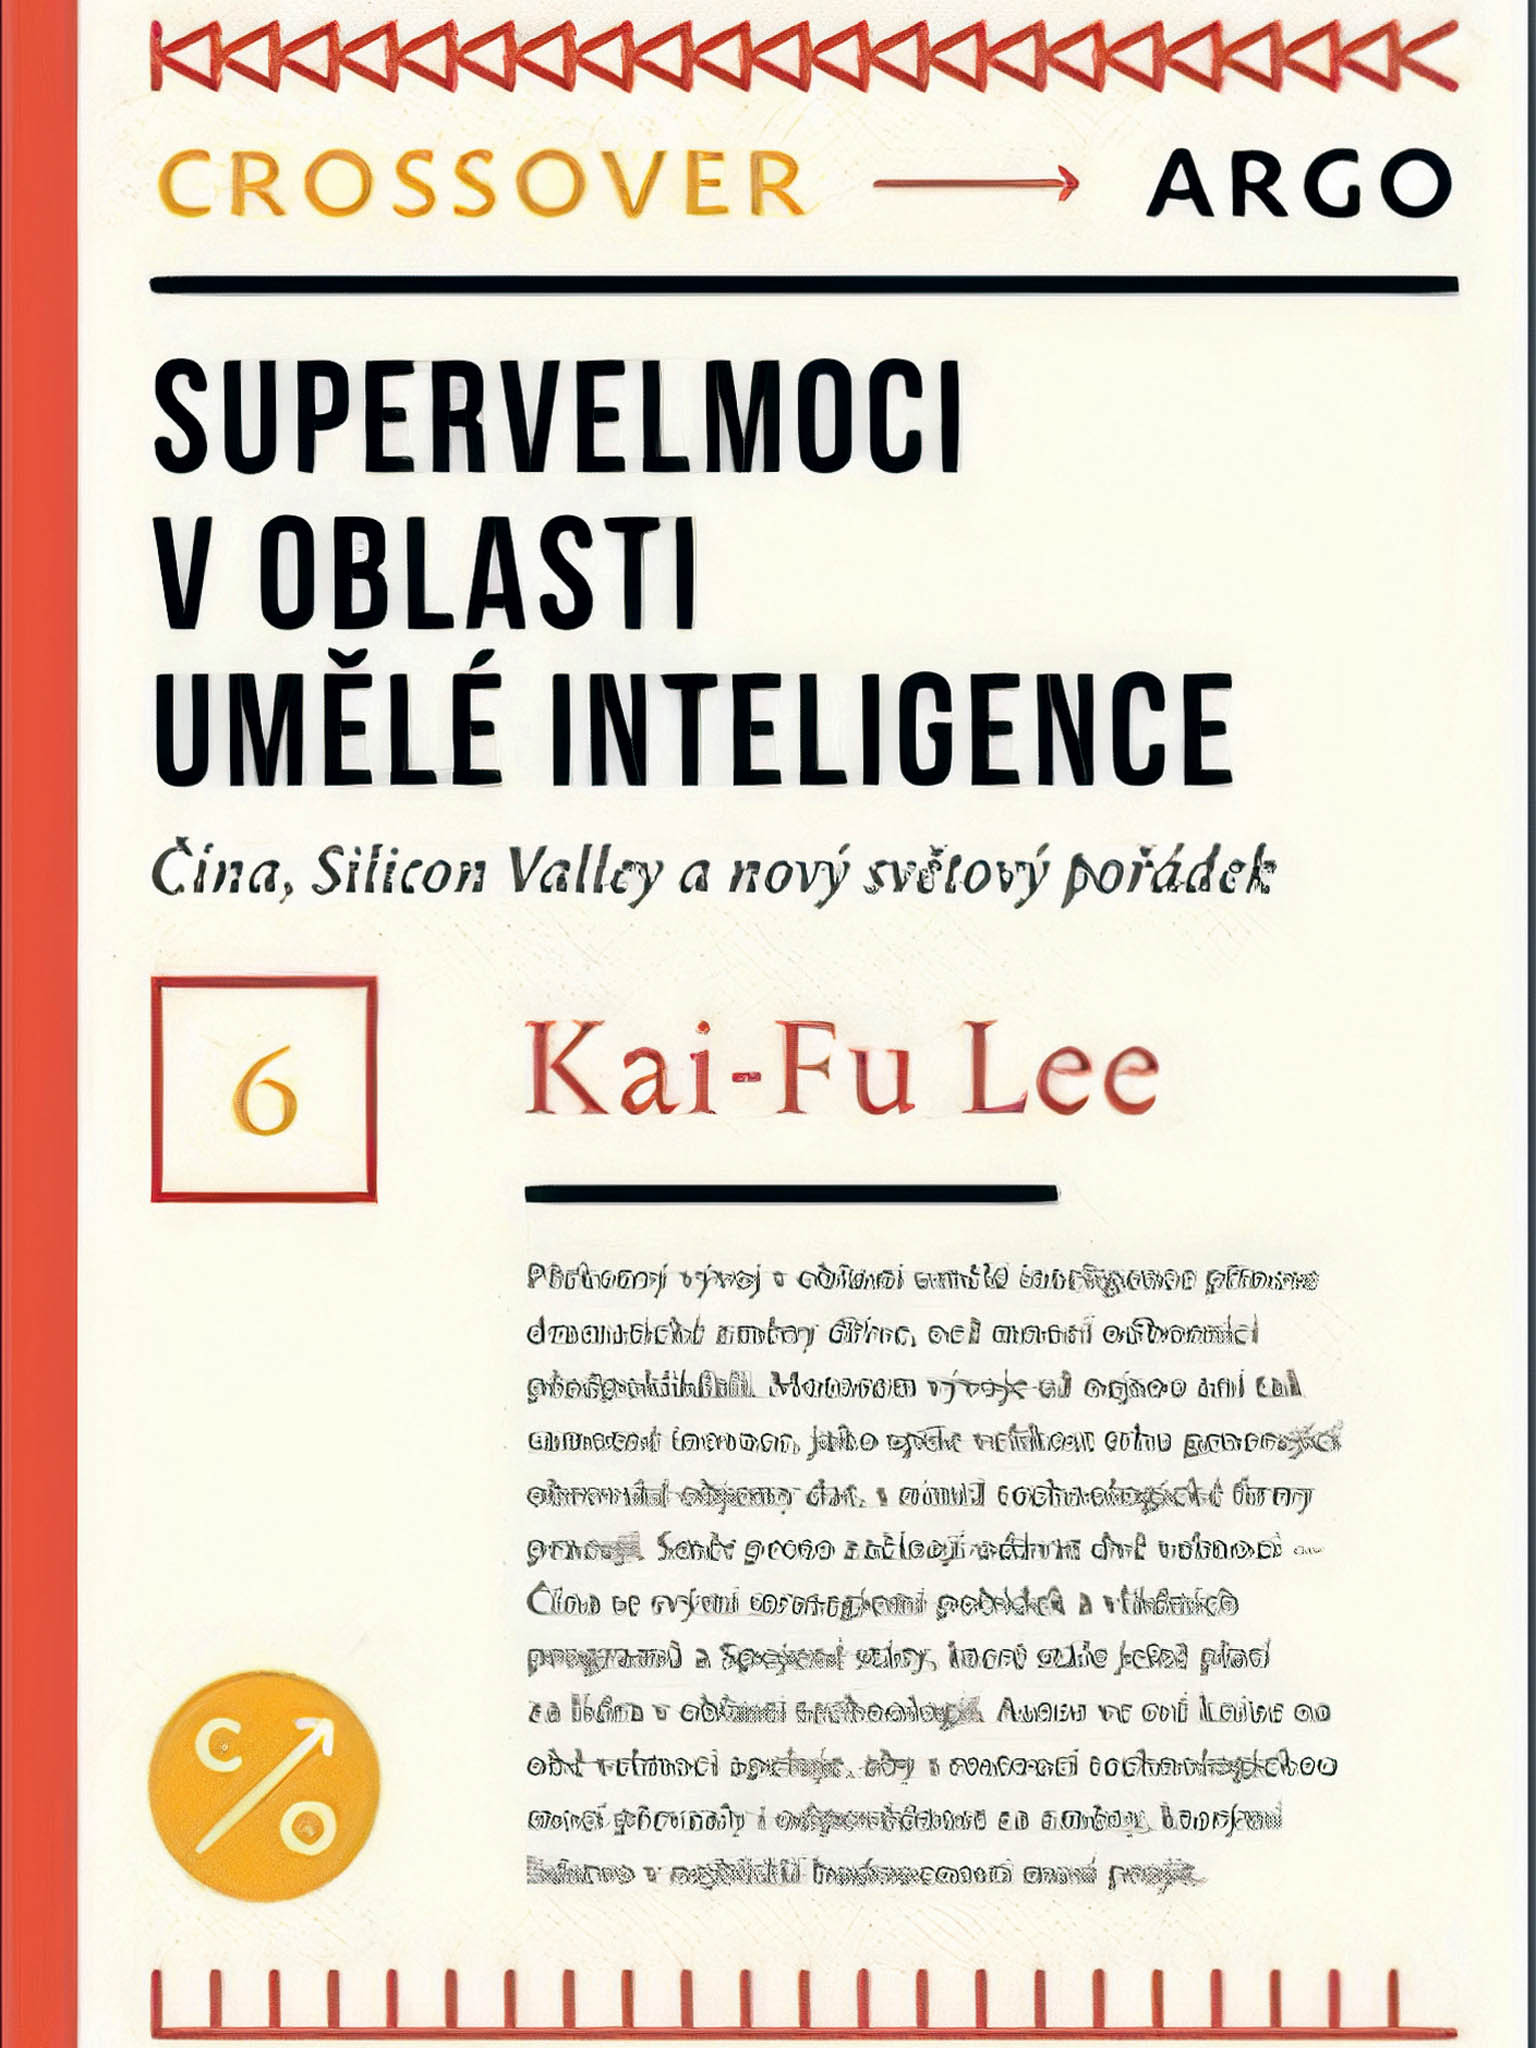 Kai&#8209;Fu Lee Supervelmoci umělé inteligence. Čína, Silicon Valley a svět v éře AI (Argo, 2019, přel. Petr Holčák, 292 str.)